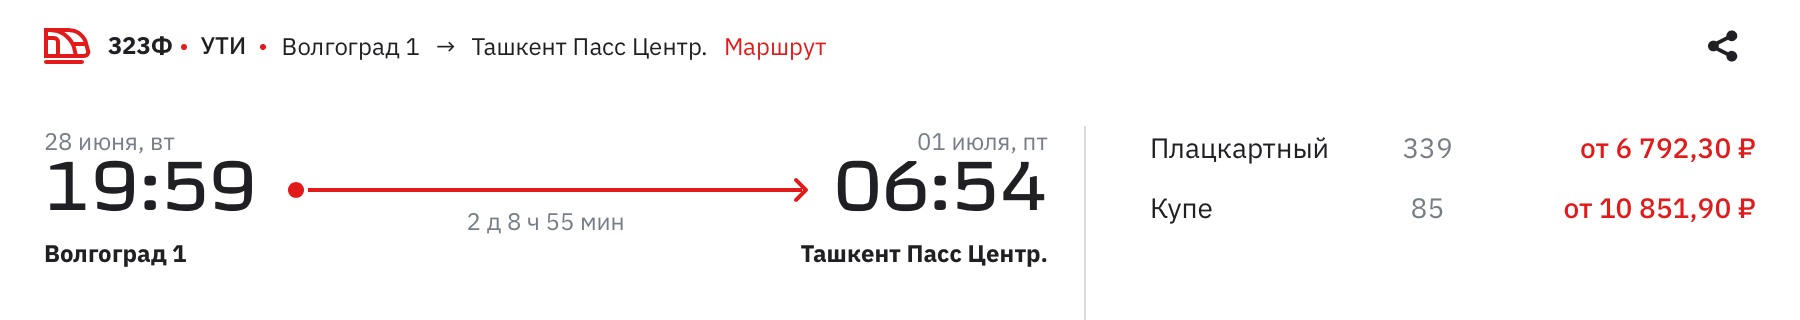 А из Волгограда в Ташкент — в 19:59. Источник: rzd.ru